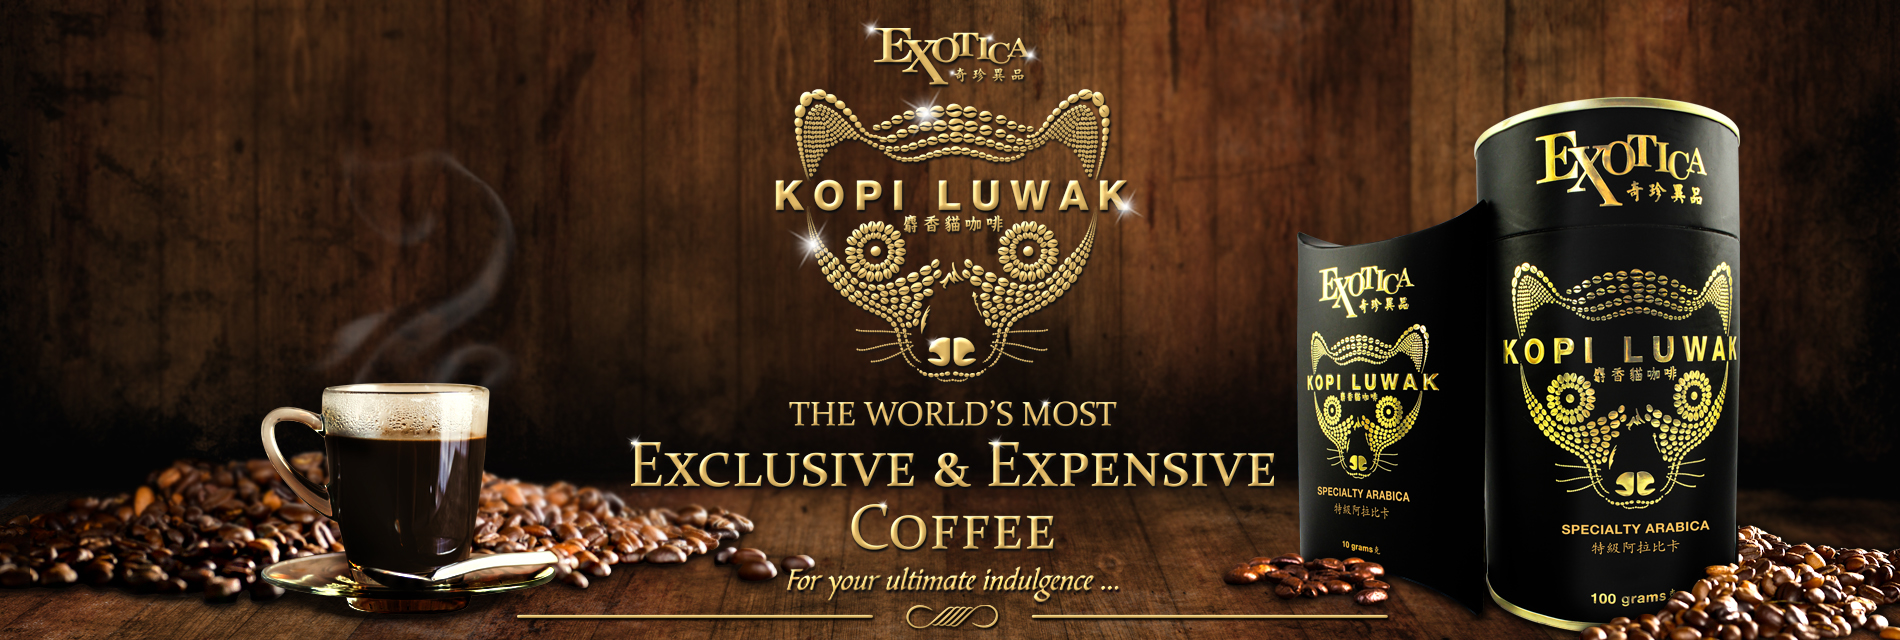 Exotica Kopi Luwak